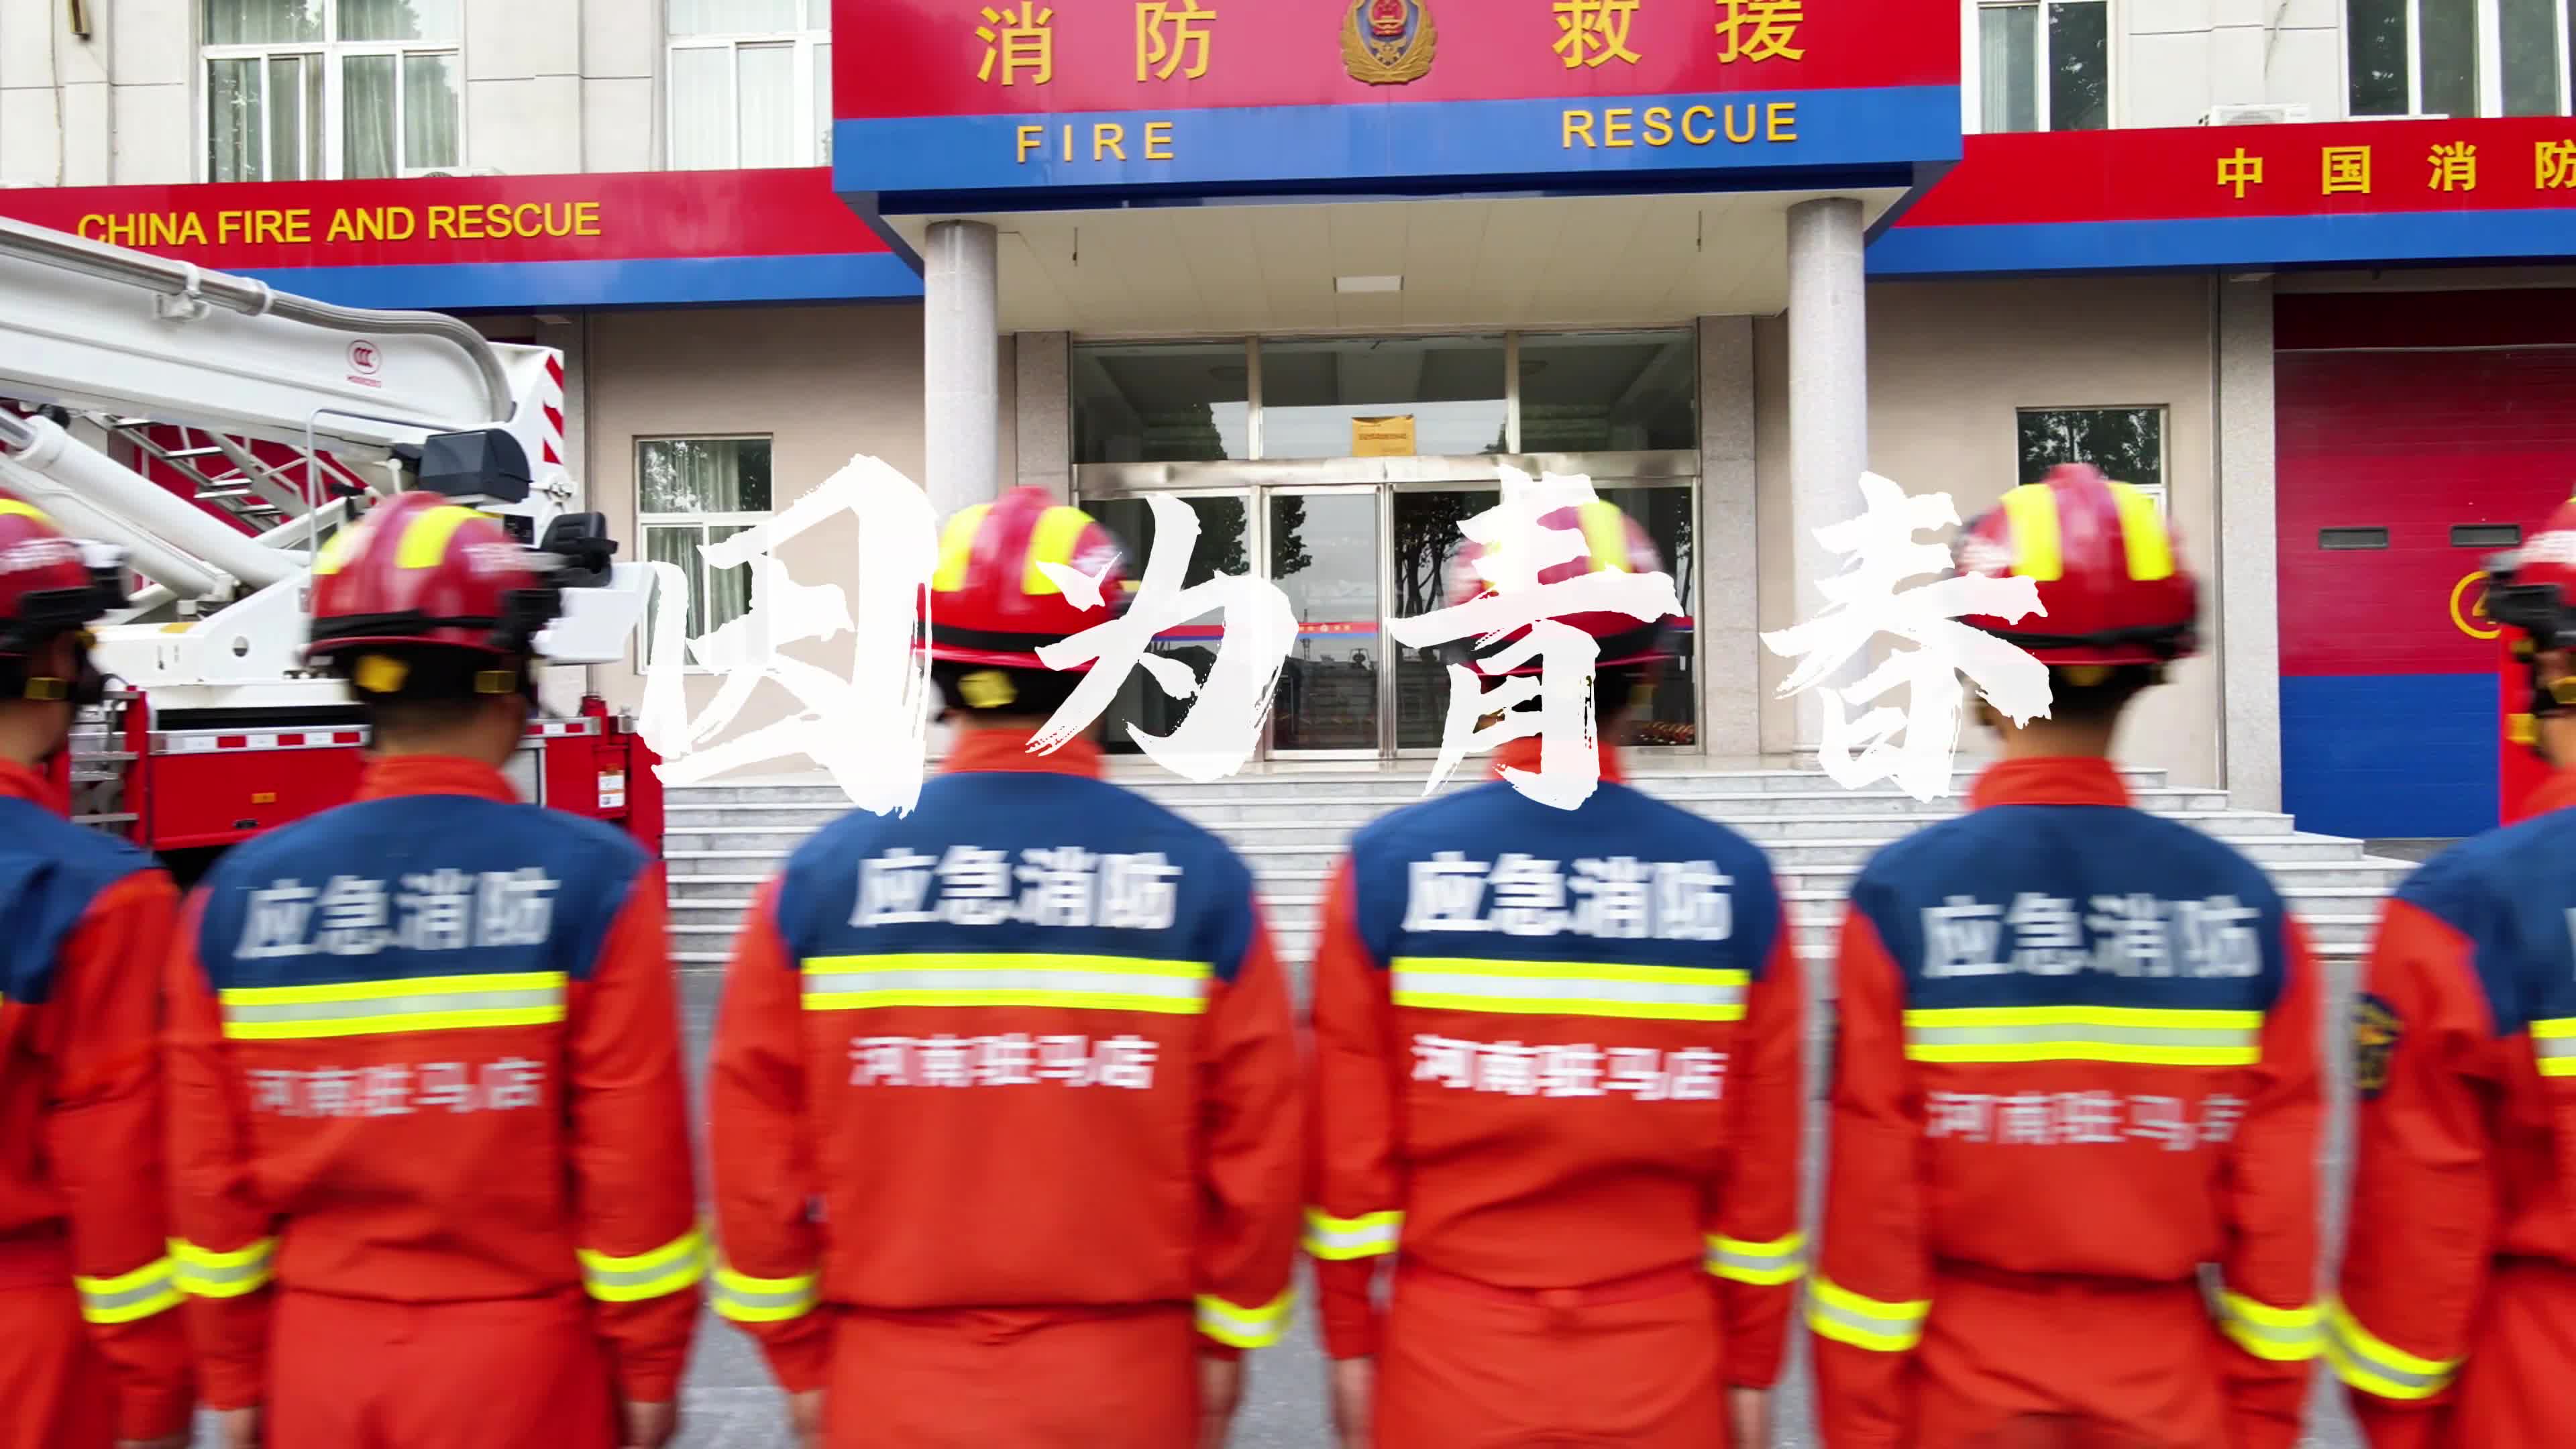 青春火焰蓝 奋斗正当时——驻马店市消防救援支队高新区大队